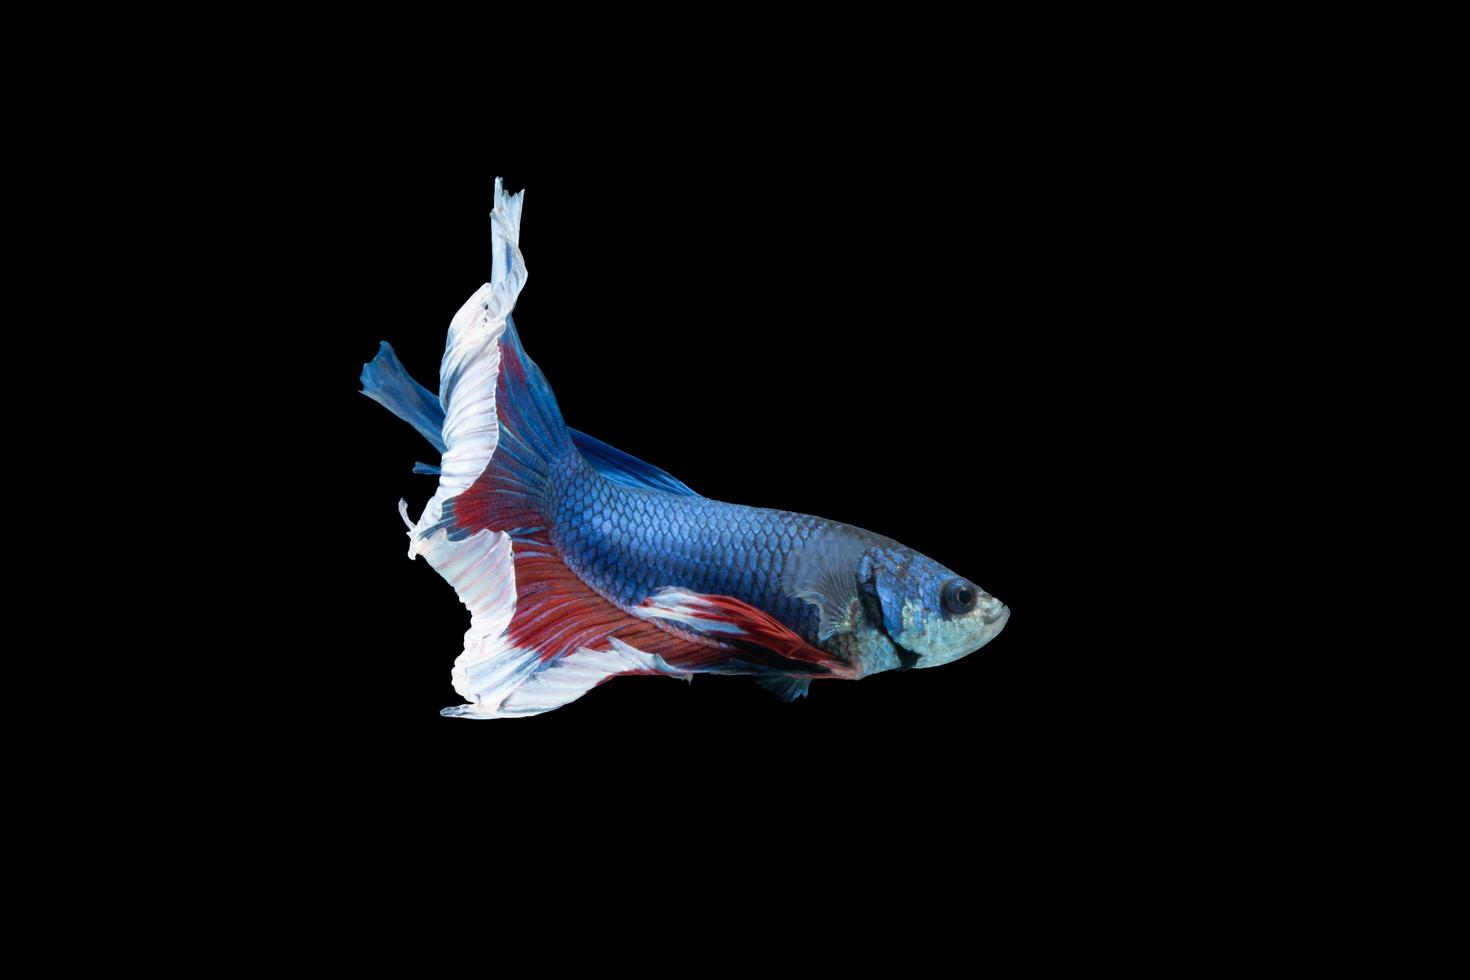 pez betta de media luna con rayas azules y rojas foto